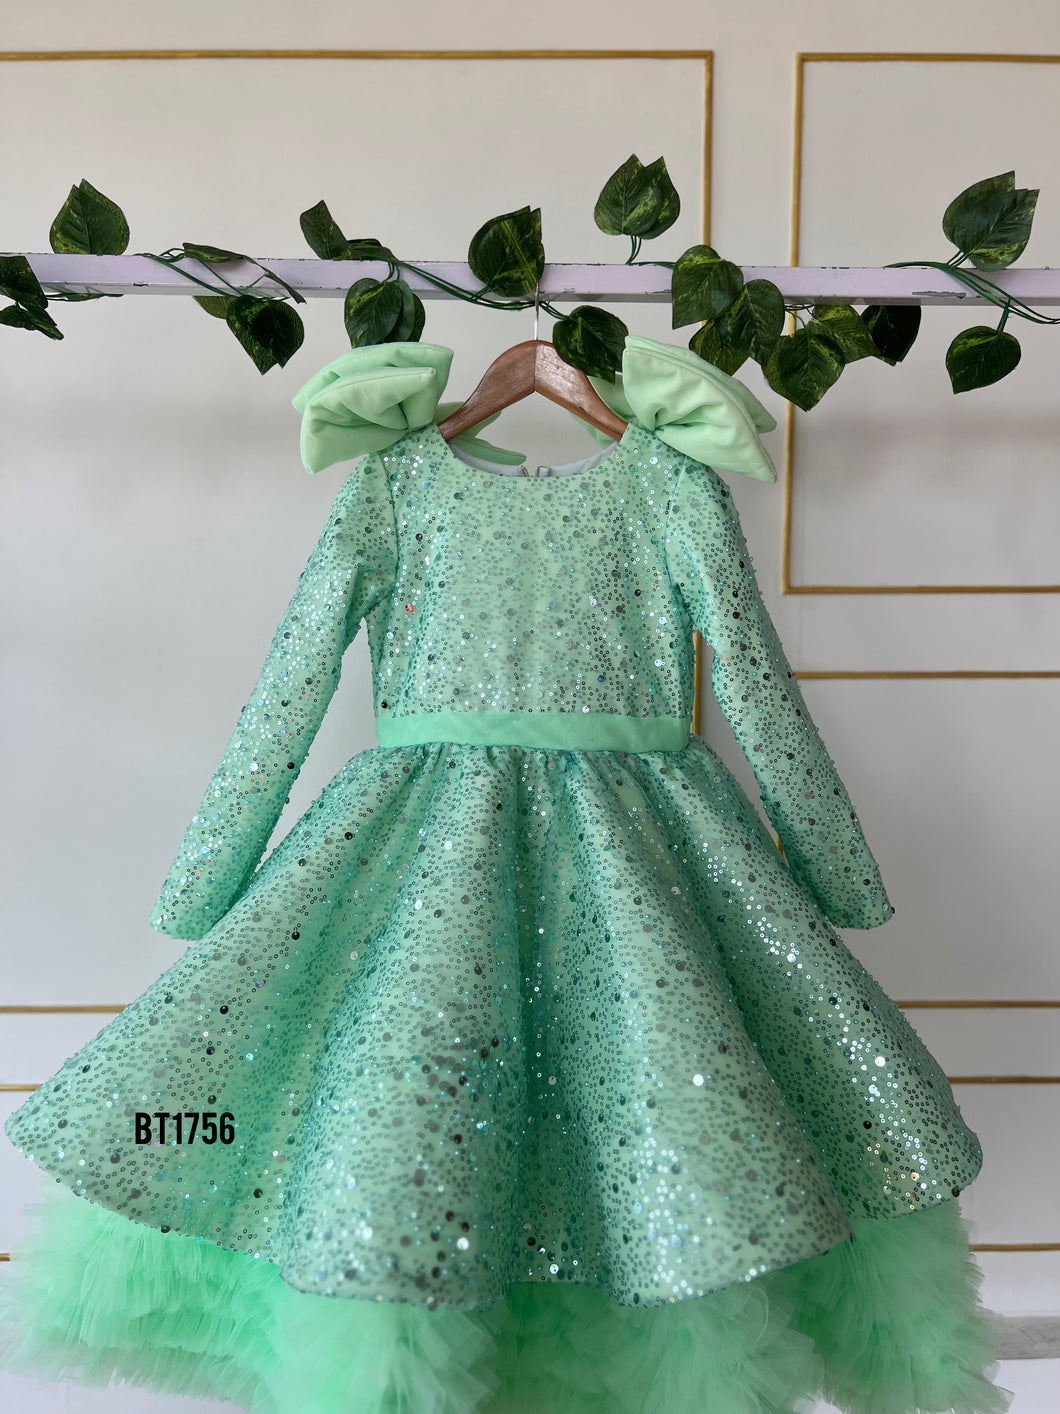 BT1756 Enchanted Sparkle Mint Sequin Party Dress